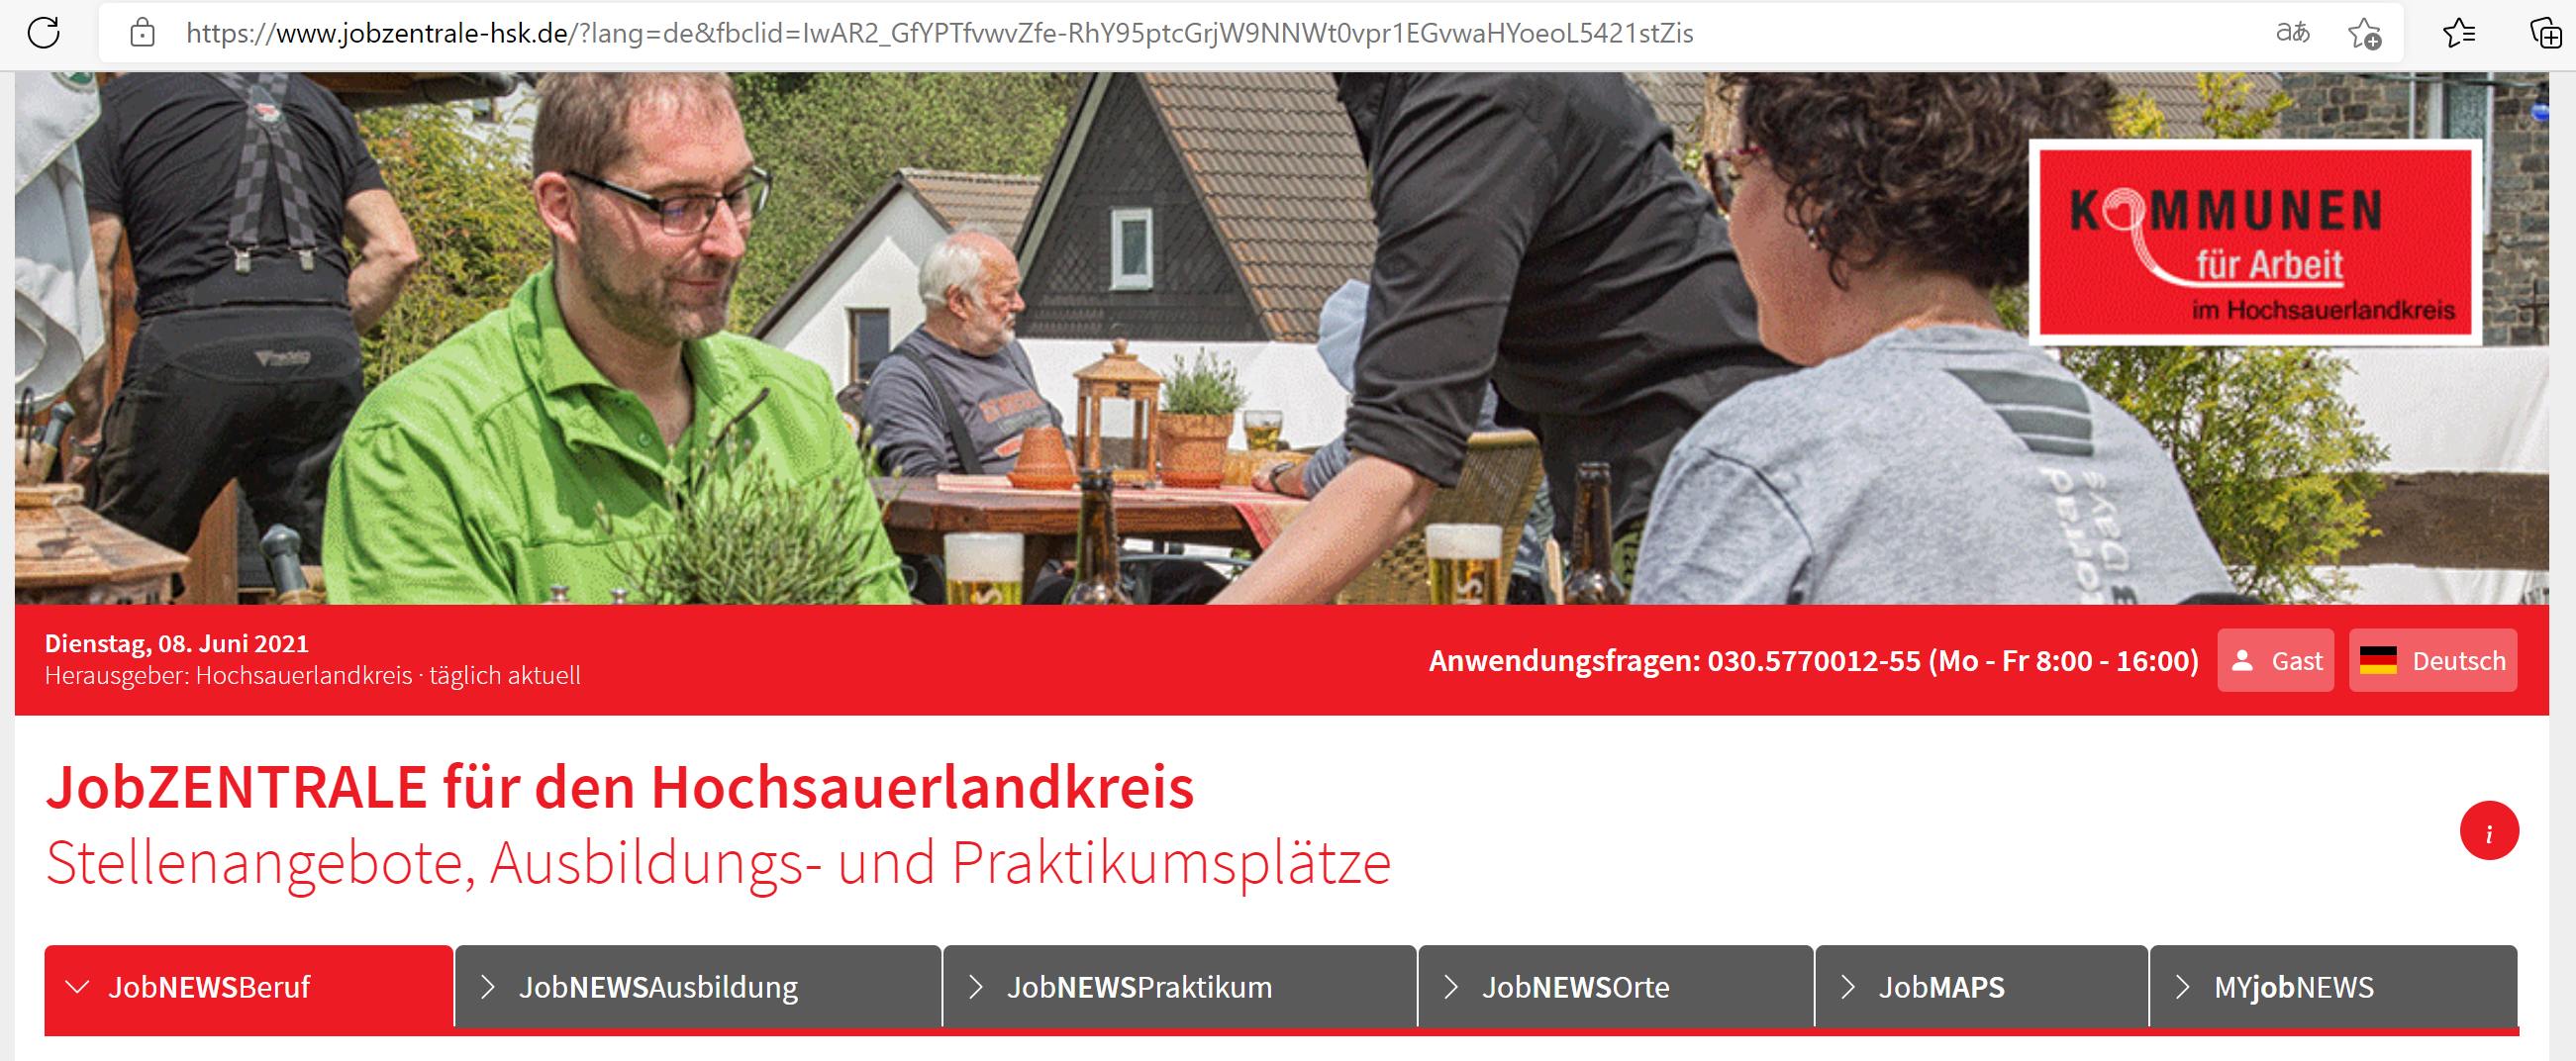 www.jobzentrale-hsk.de